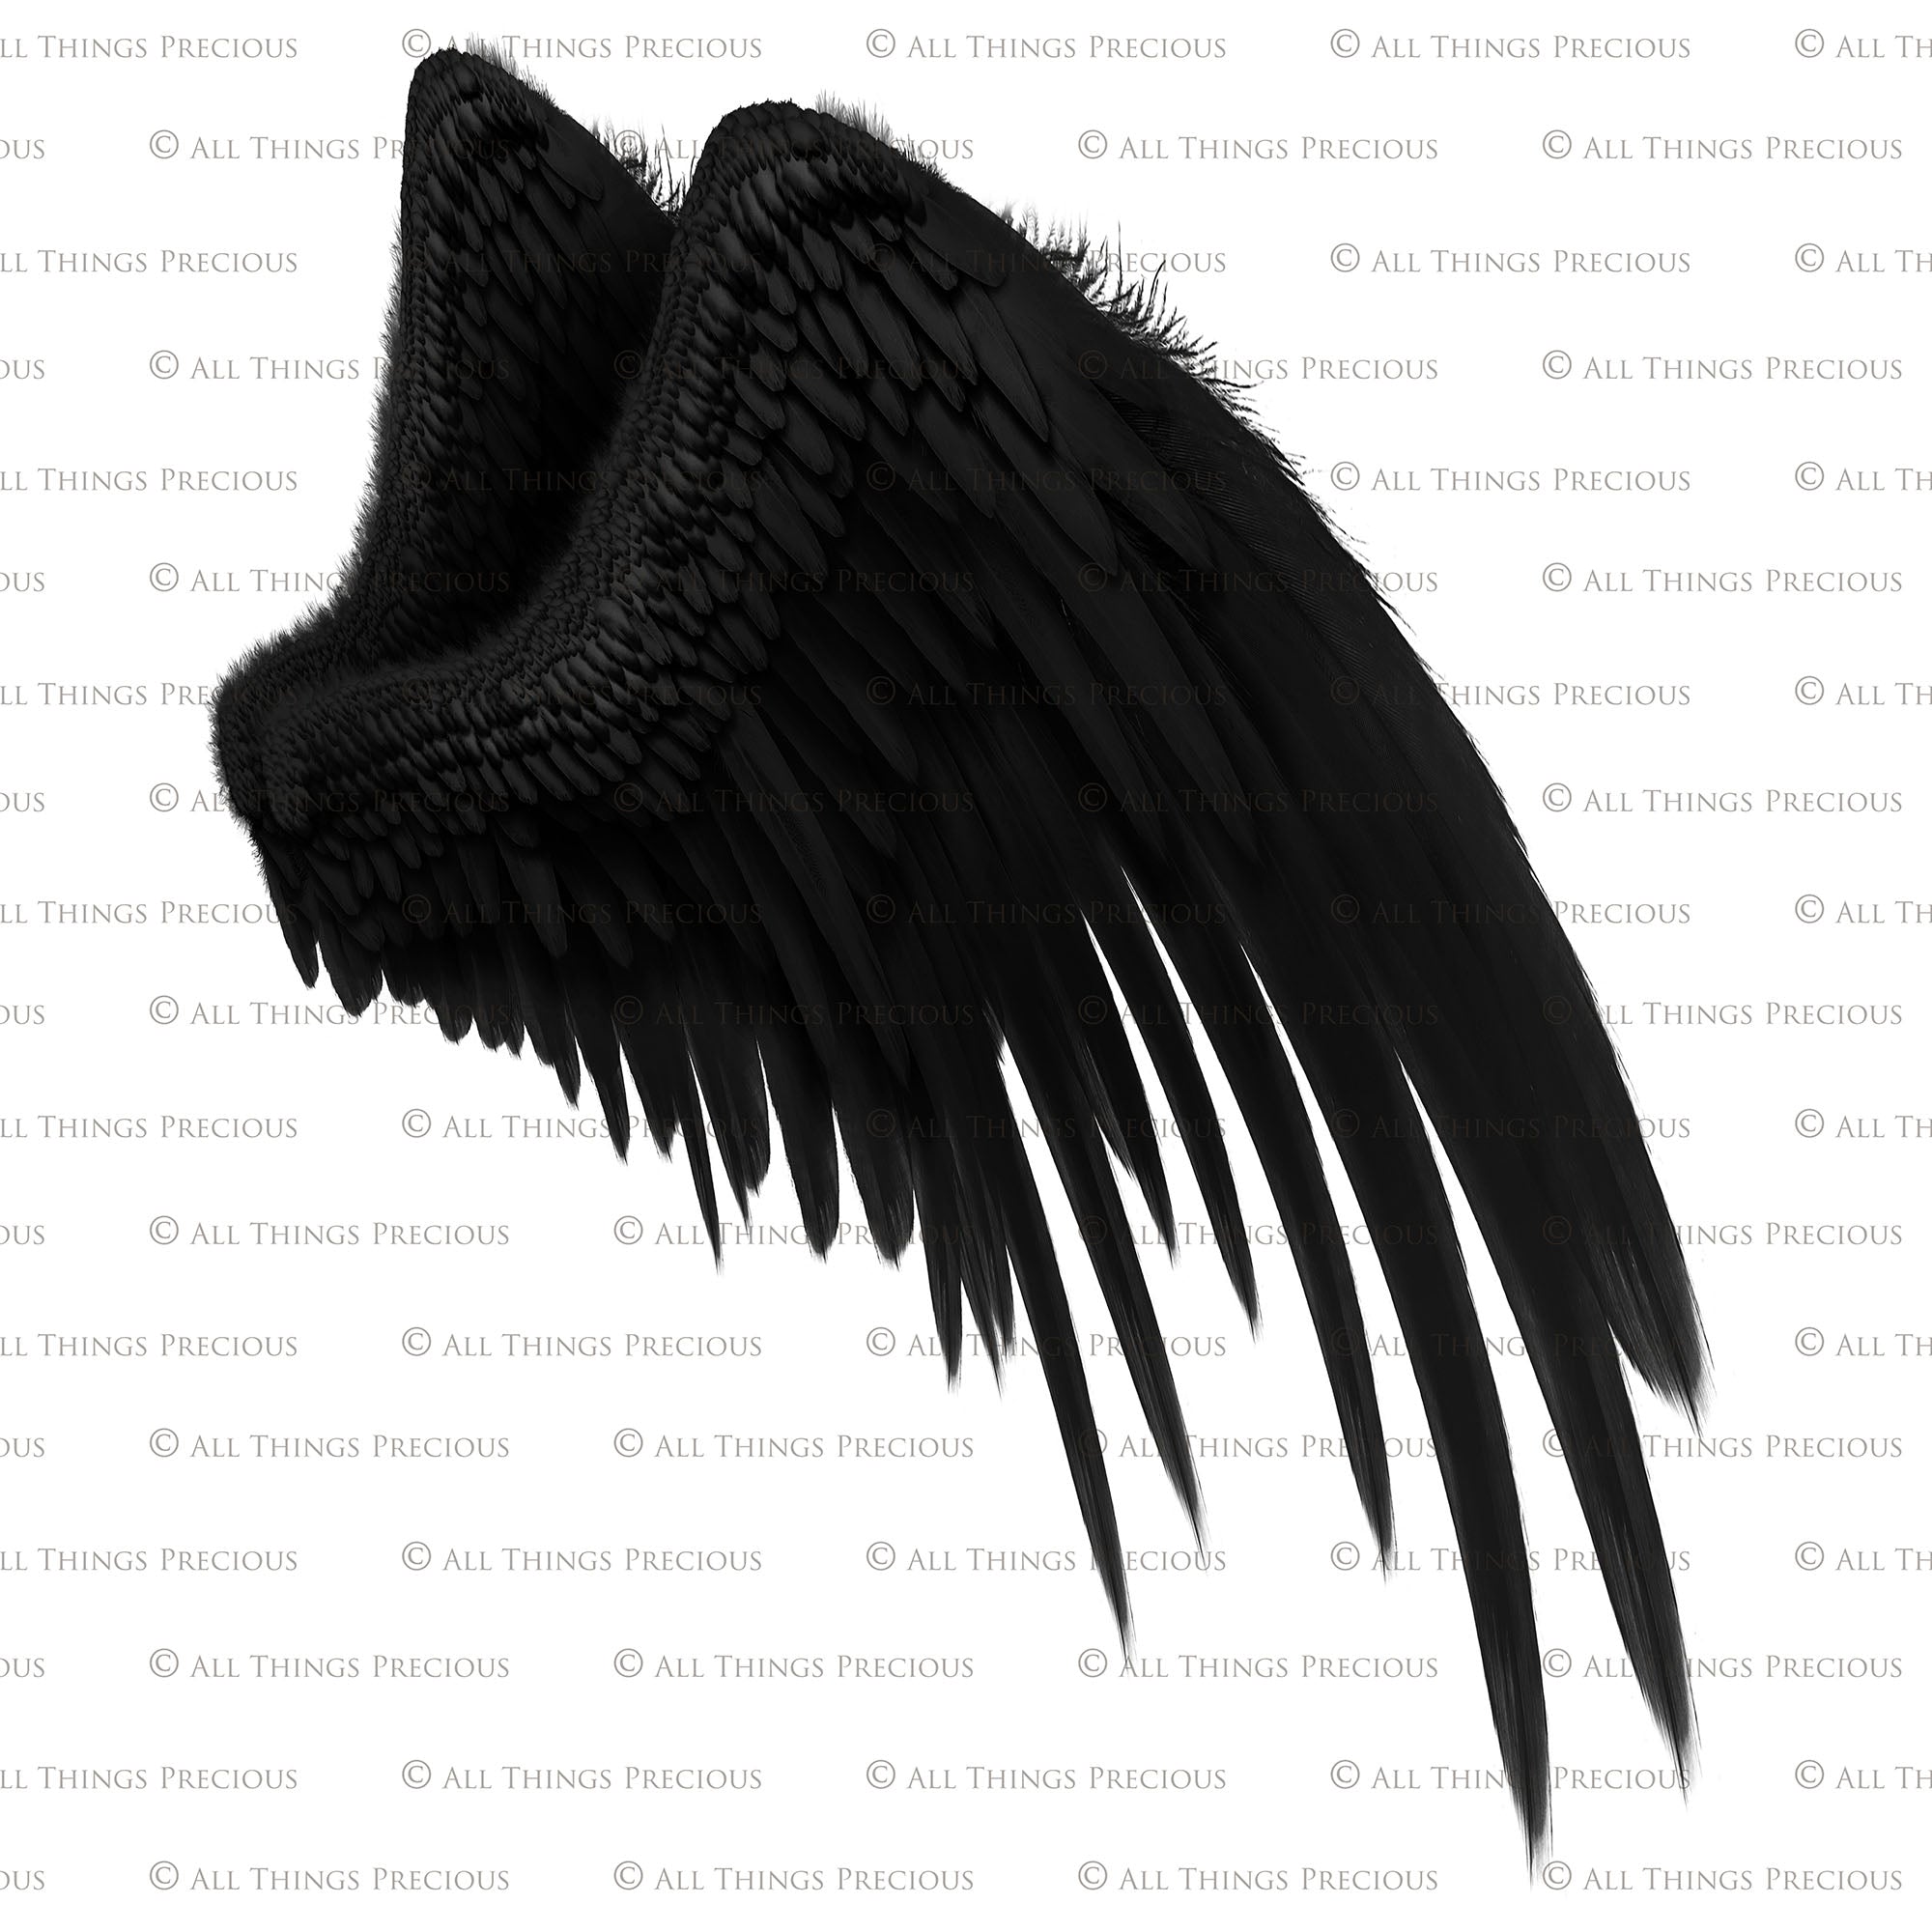 Black Wings PNG Image  Angel wings png, Black angel wings, Wings png